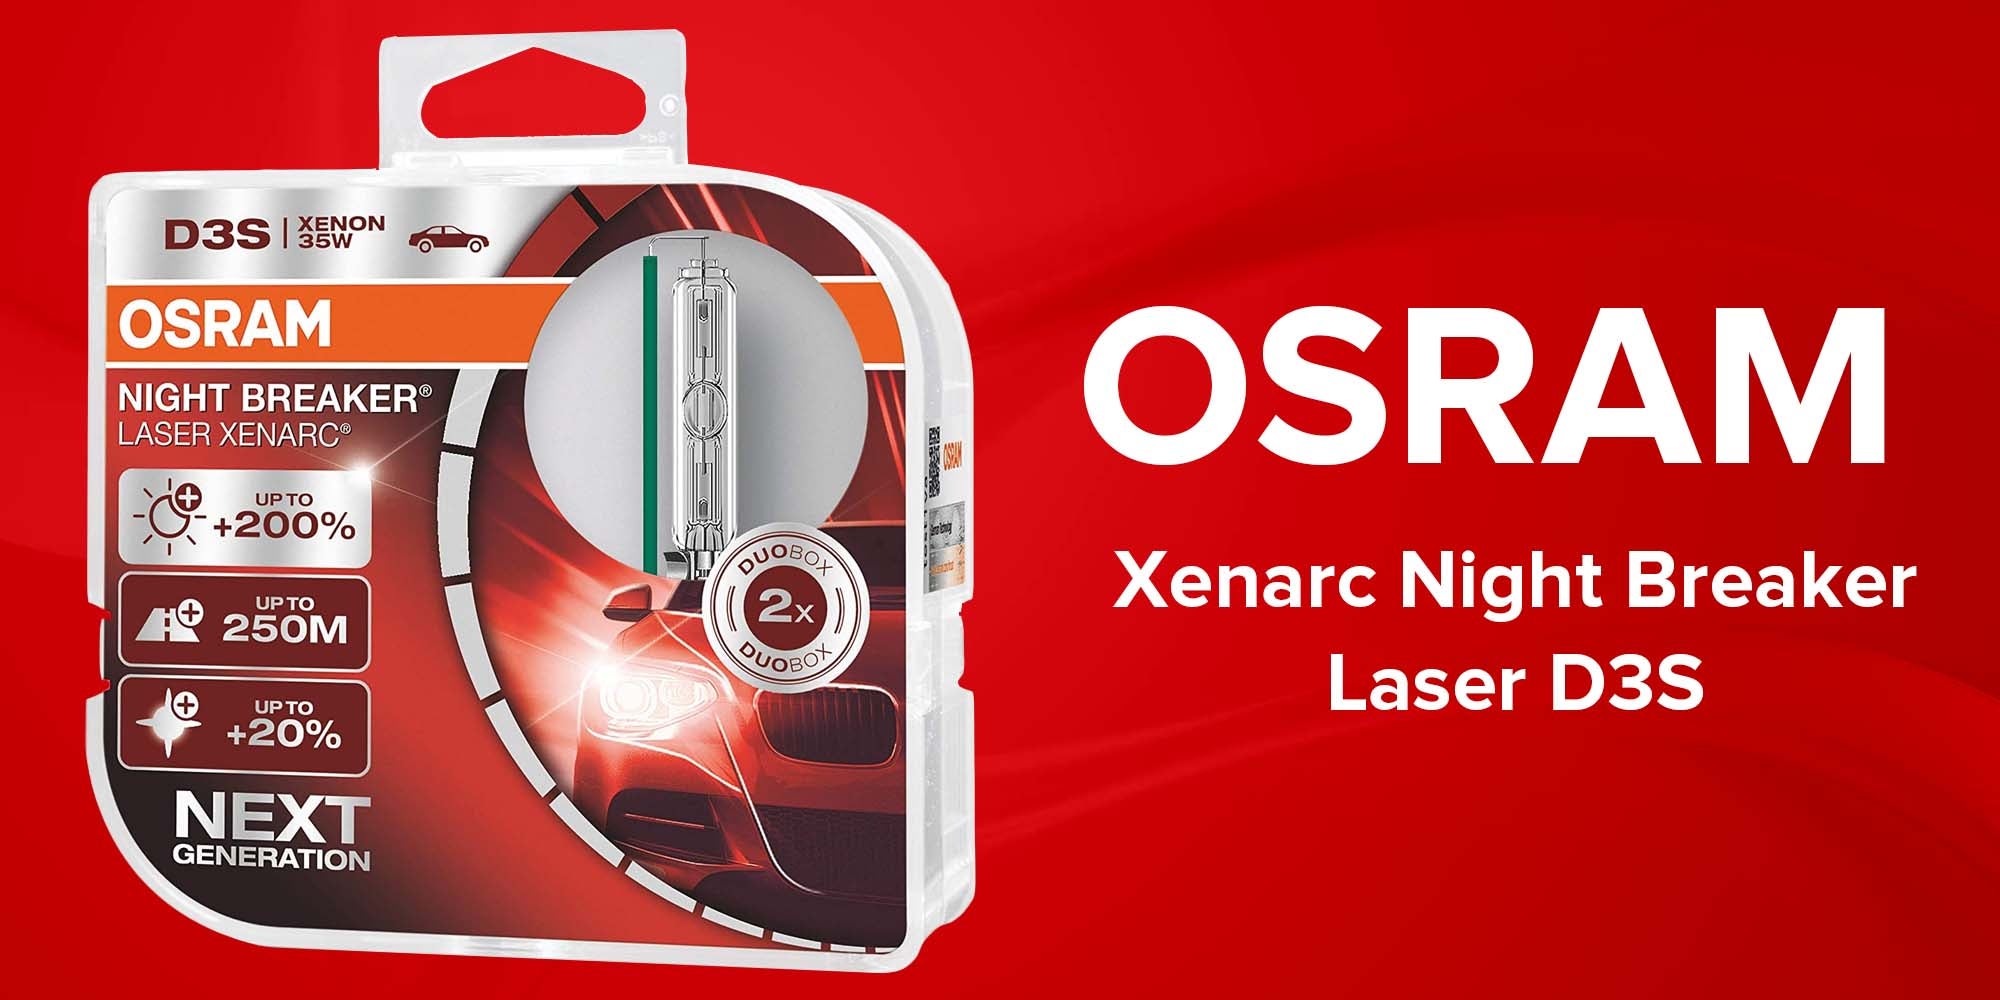 Osram Xenarc Night Breaker Laser D3S KSA